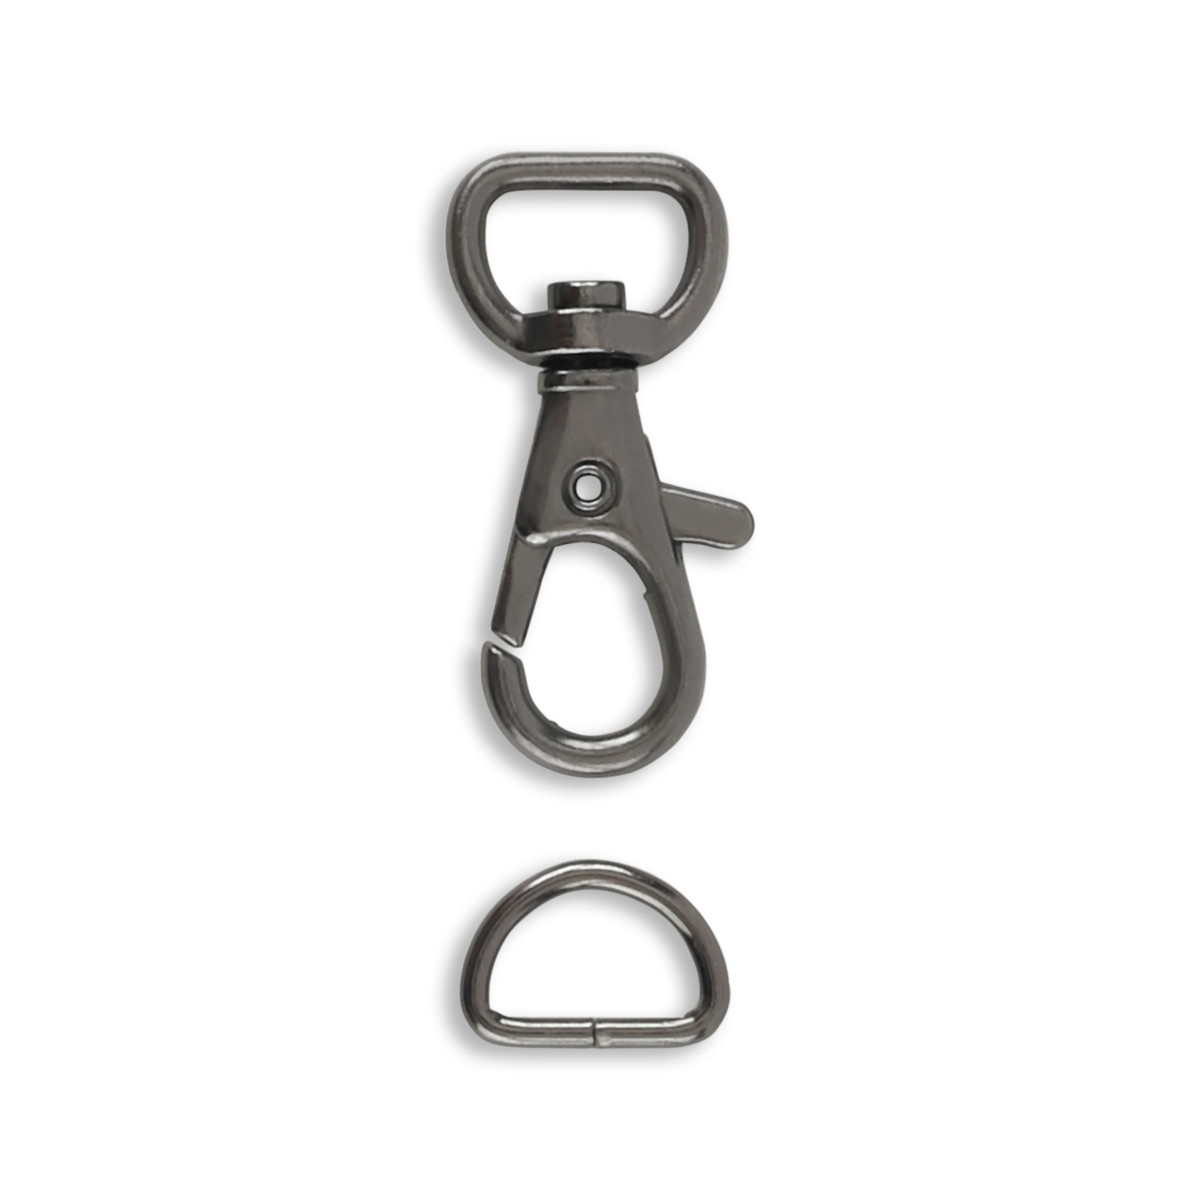 Dritz Swivel Hooks & D Rings 1/2in Nickel Bag & Tote Accessories, 1/2, 12ct